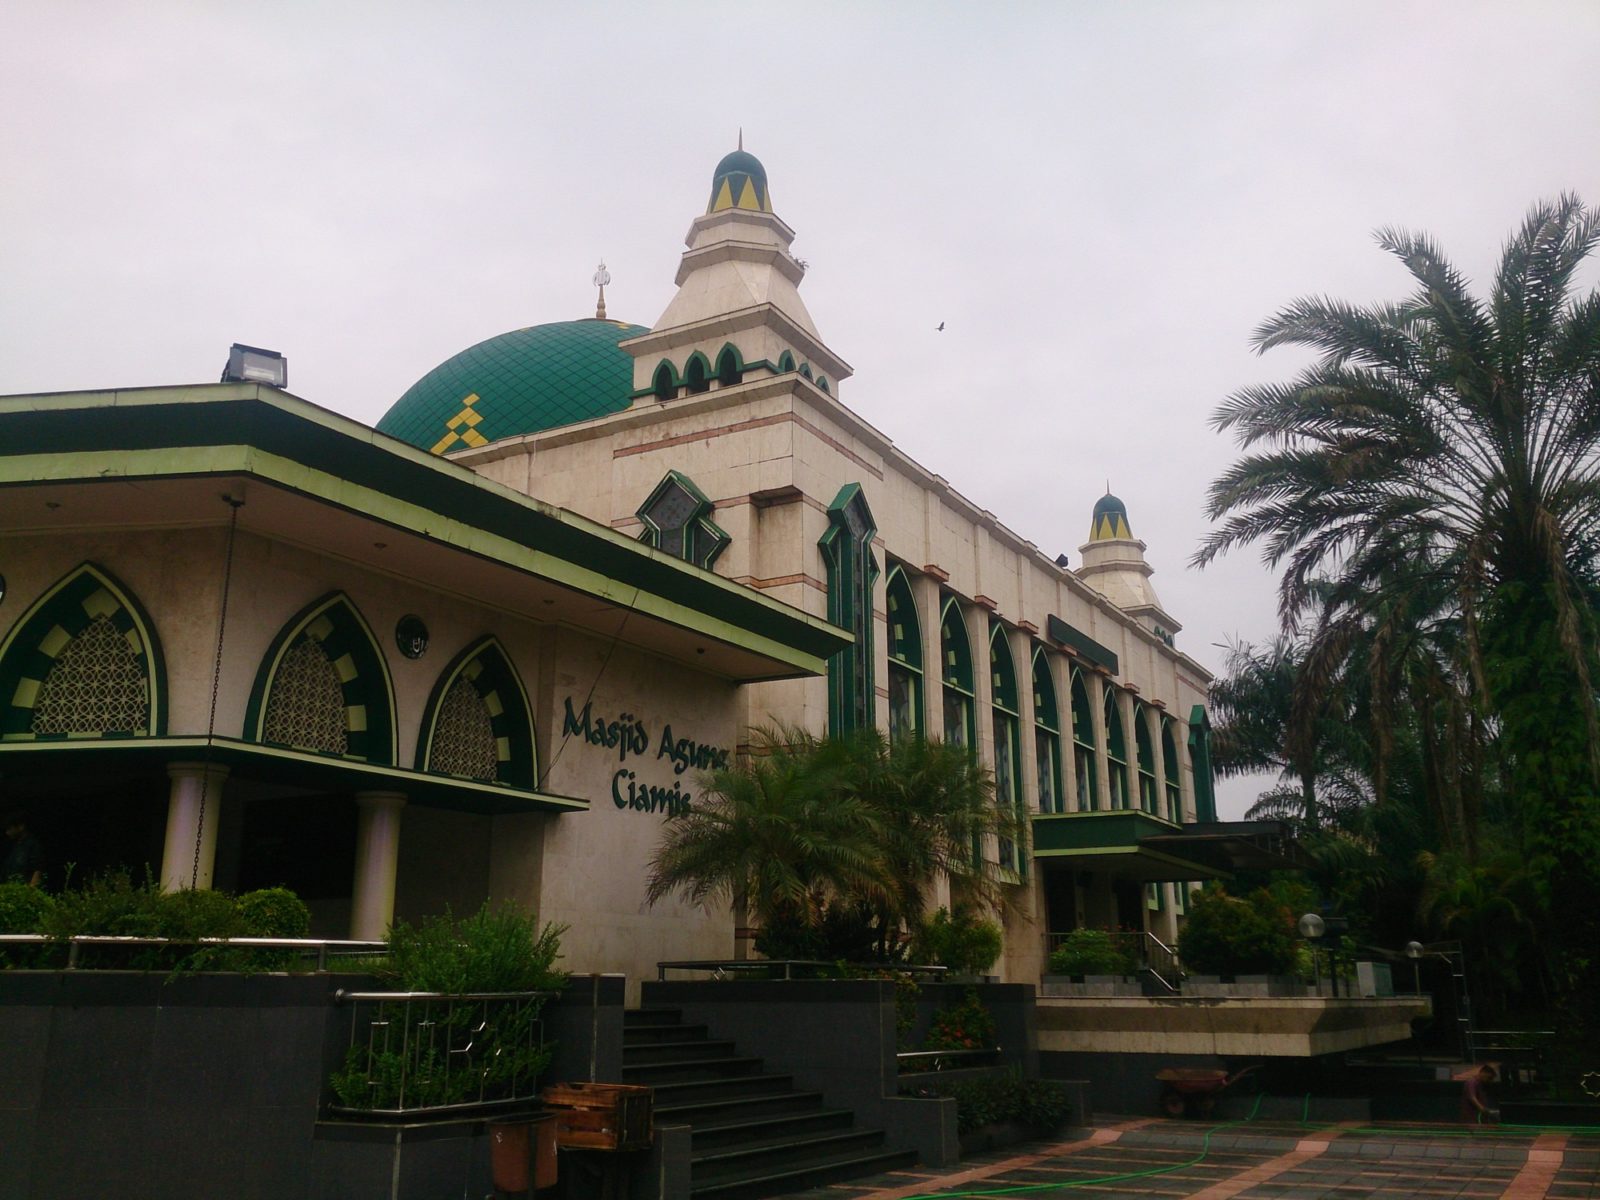 Masjid Agung Ciamis